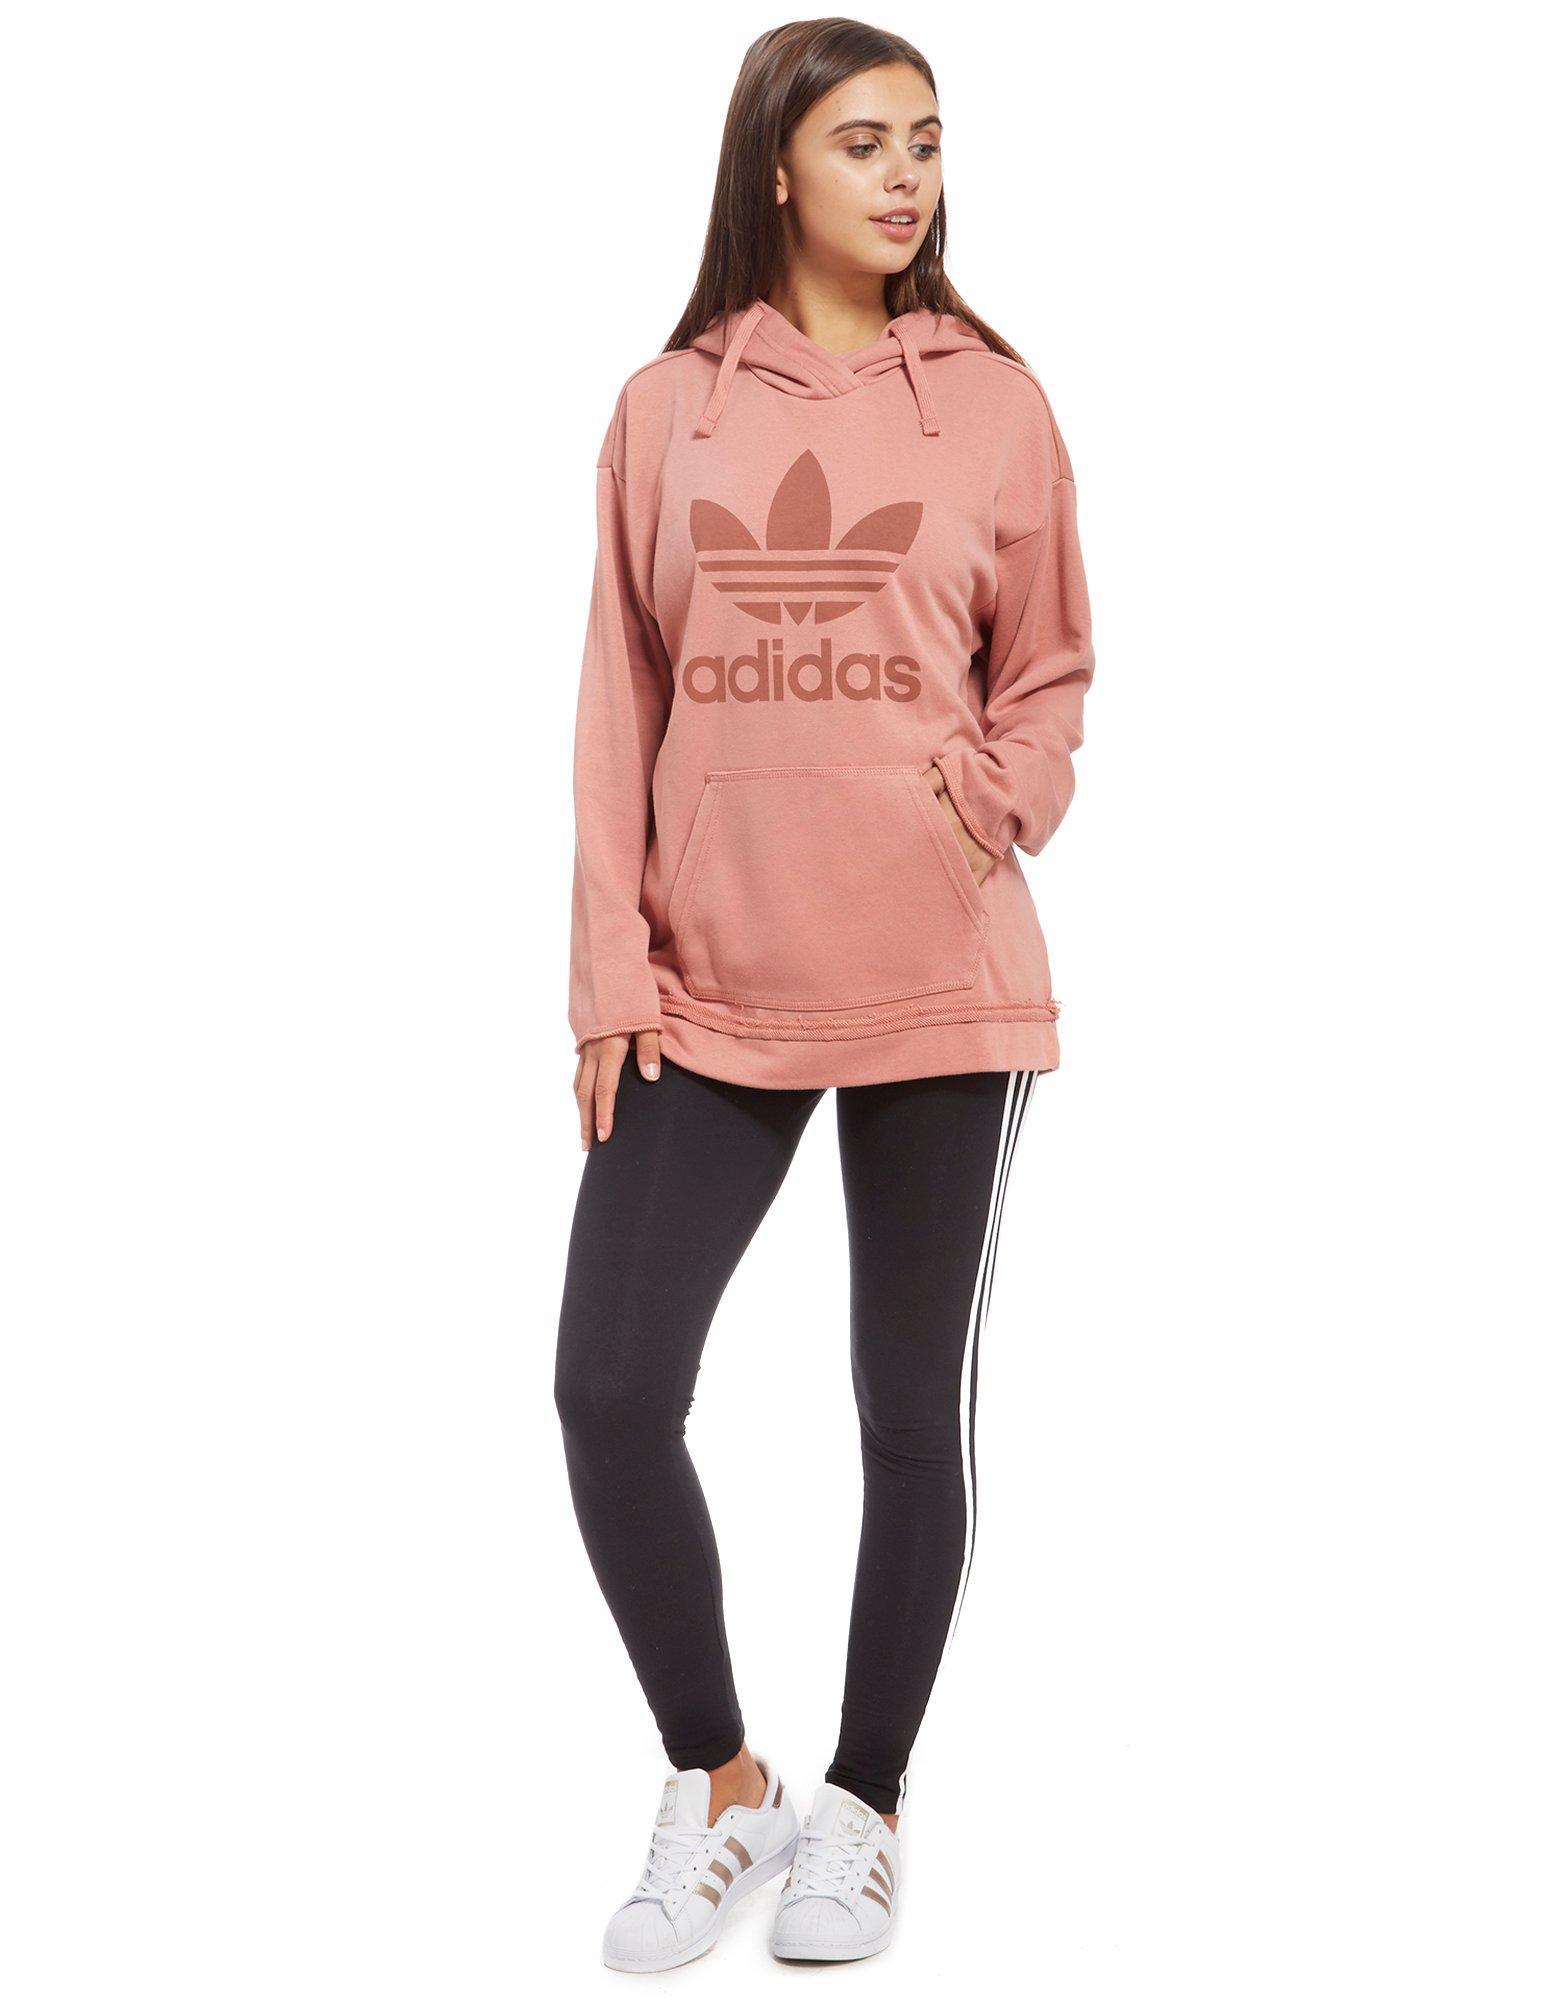 adidas trefoil hoodie women's pink